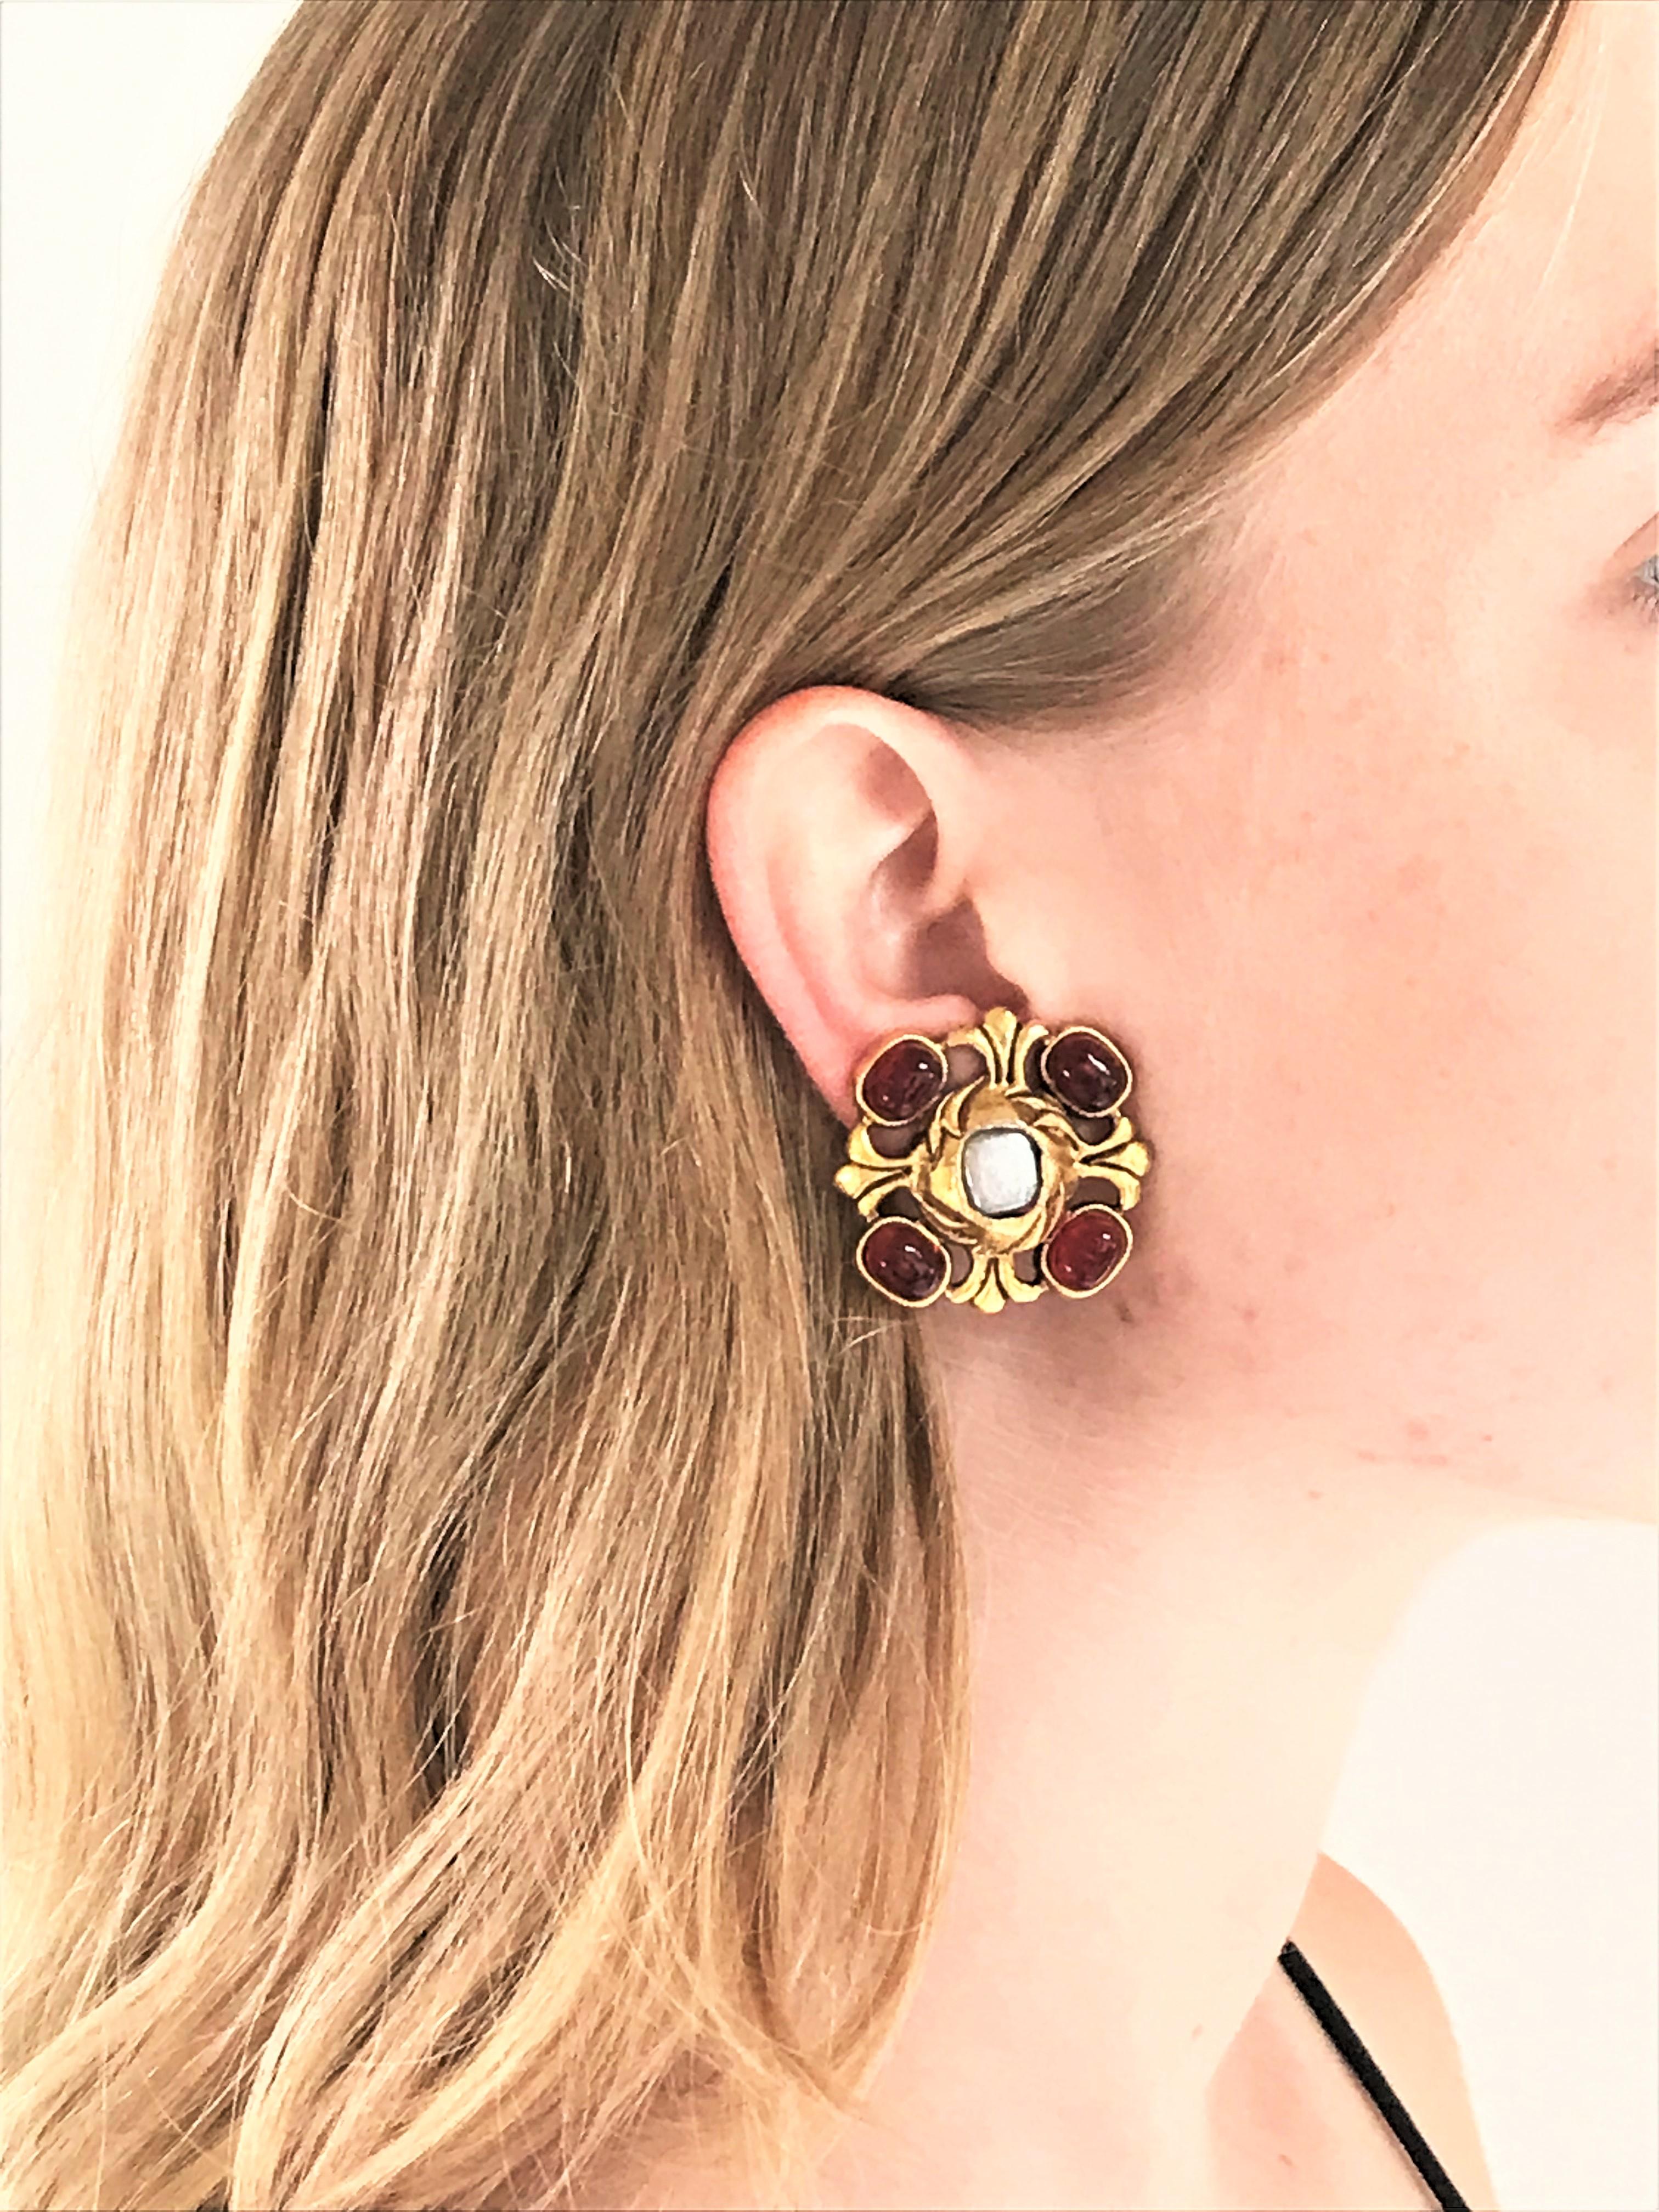 classic chanel earrings on ear